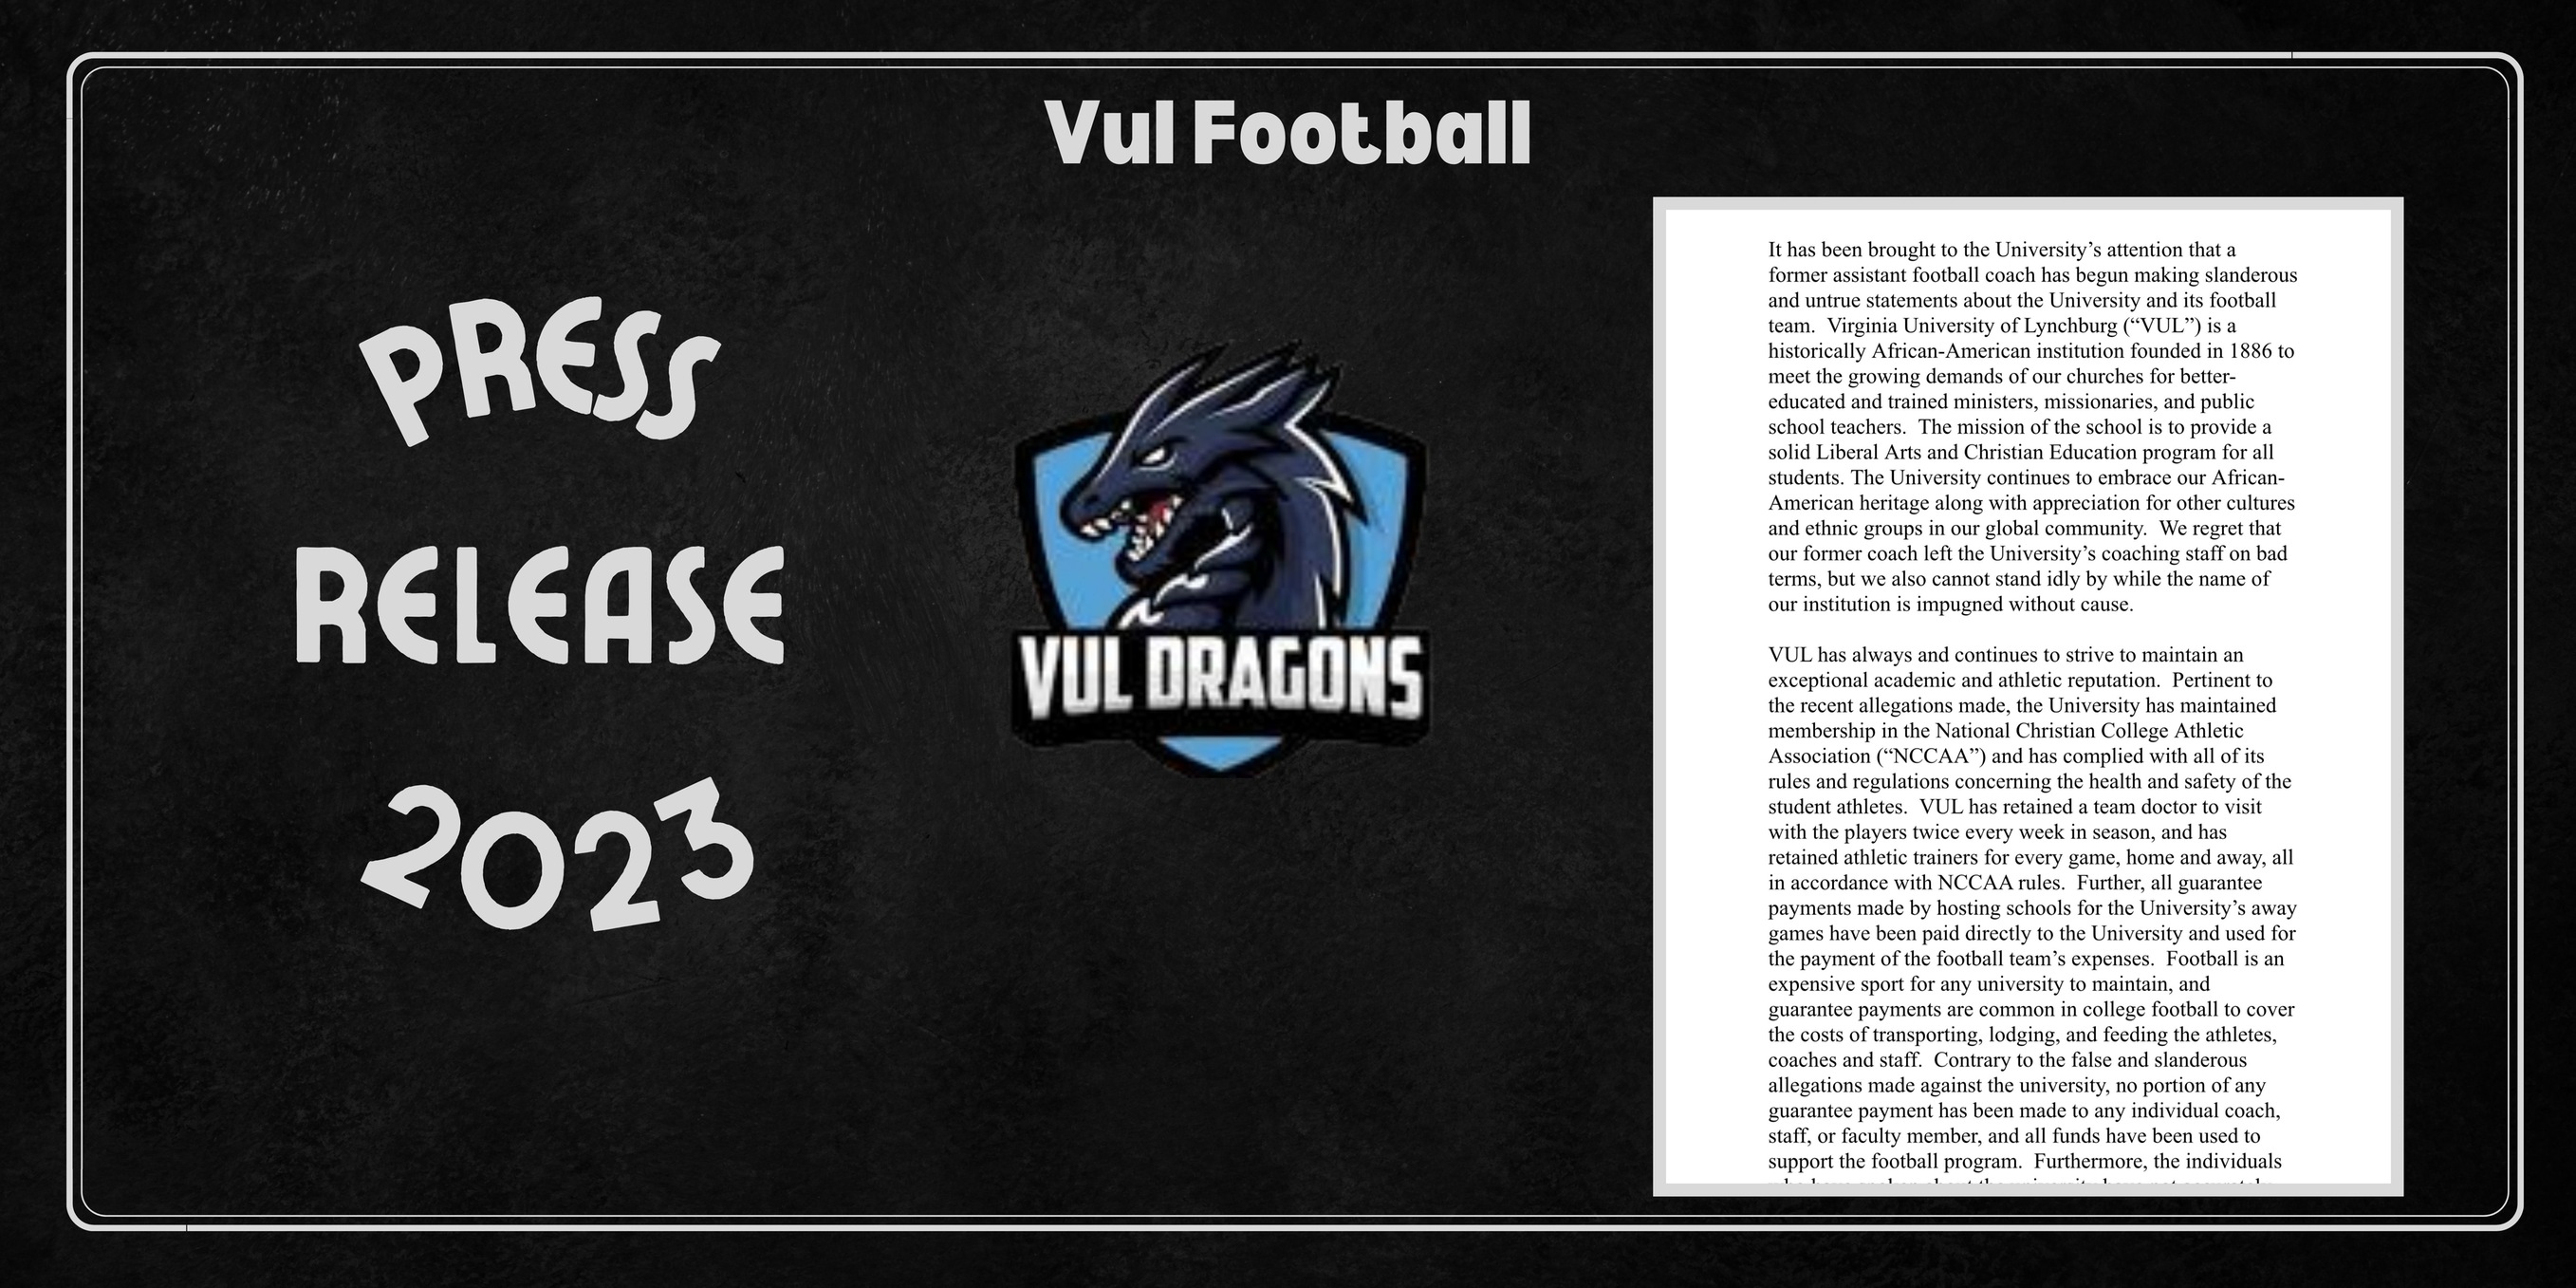 Vul Football Press Release